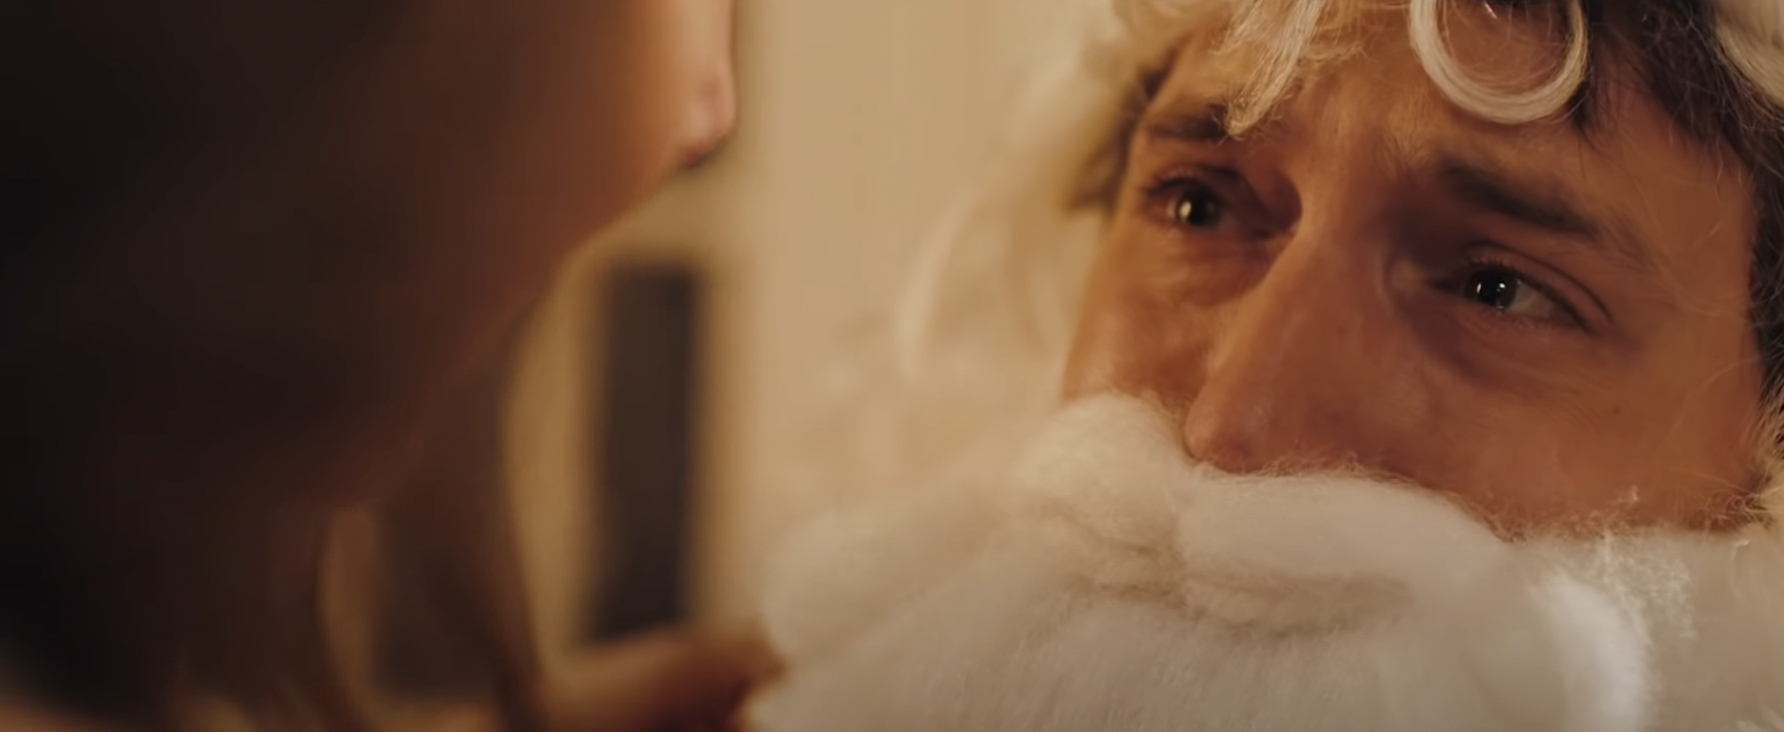 a man dressed as Santa cries in fear